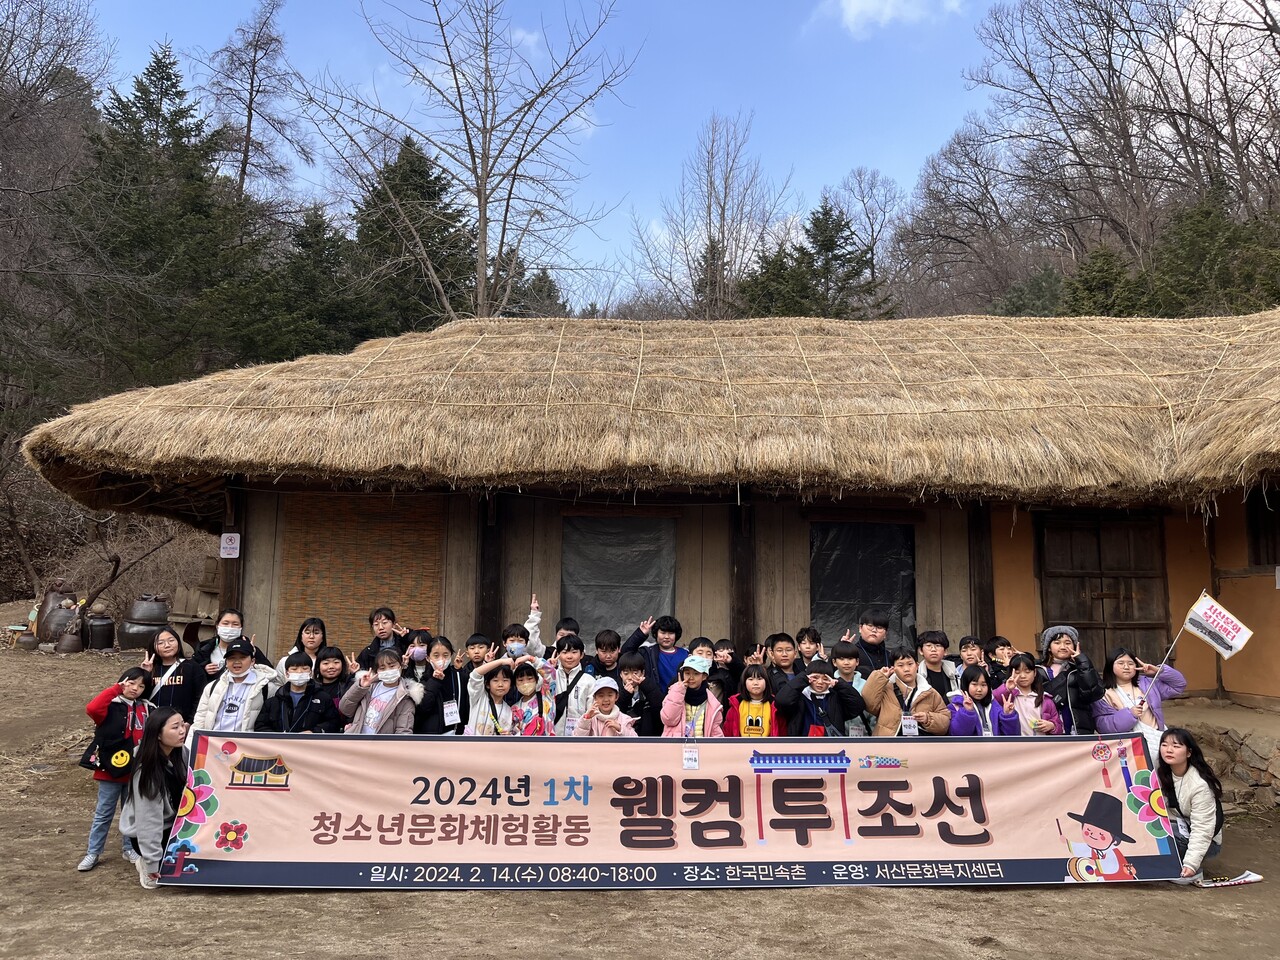 한국민속촌 탐방 프로그램 ‘웰컴 투 조선’ 운영